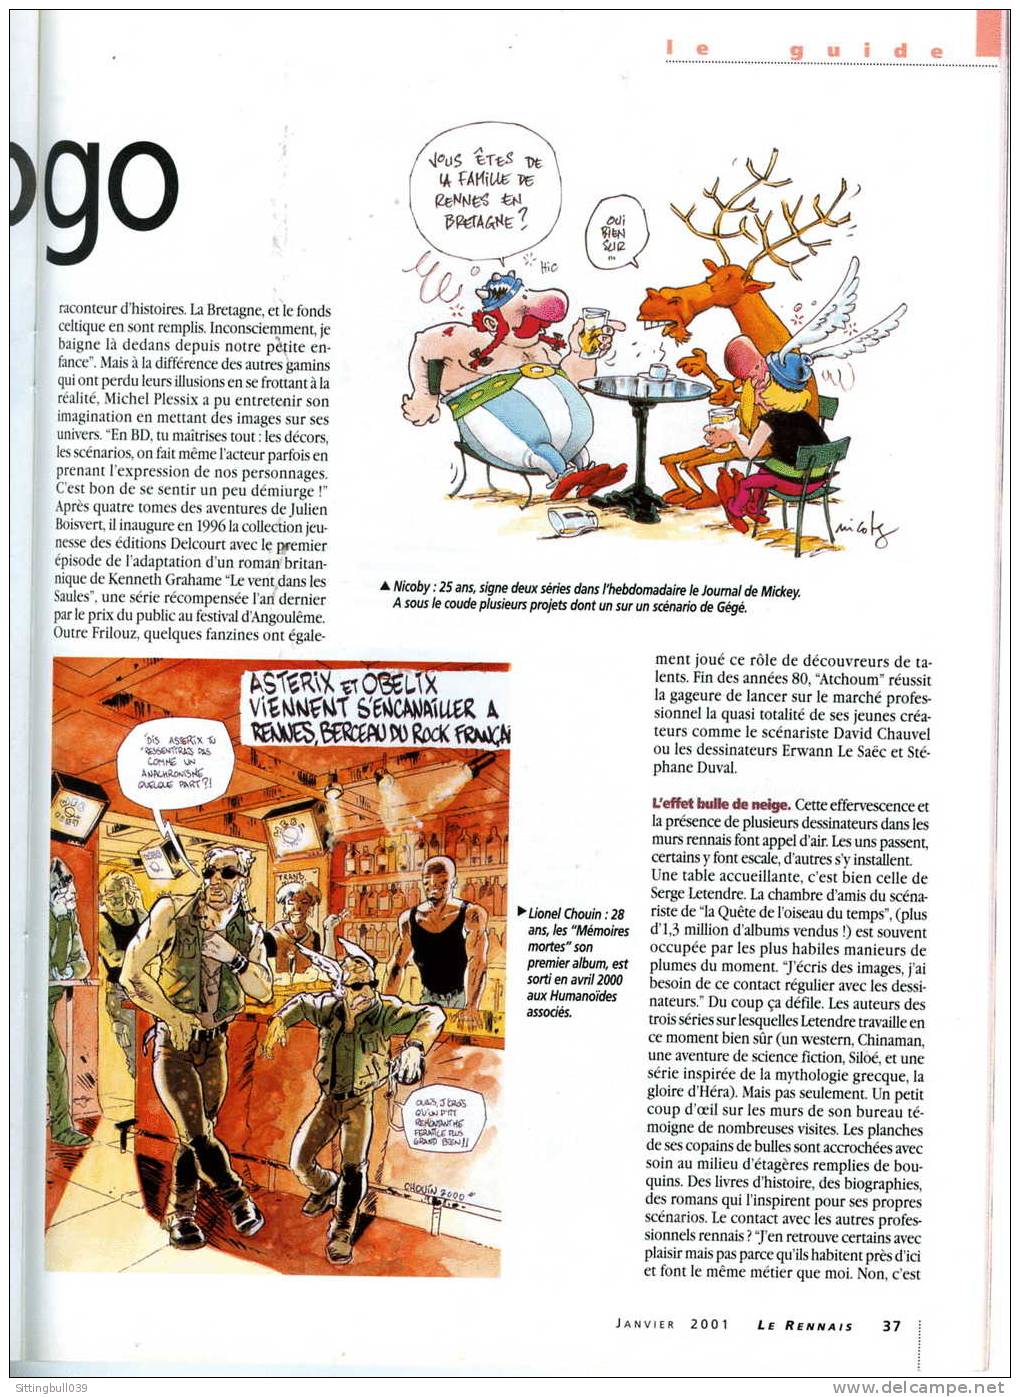 ASTERIX ARRIVE A RENNES ! DANS LE MENSUEL LE RENNAIS N° 315 DE JANVIER 2001. Les Ed. Albert René/GOSCINNY-UDERZO 2000 - Asterix